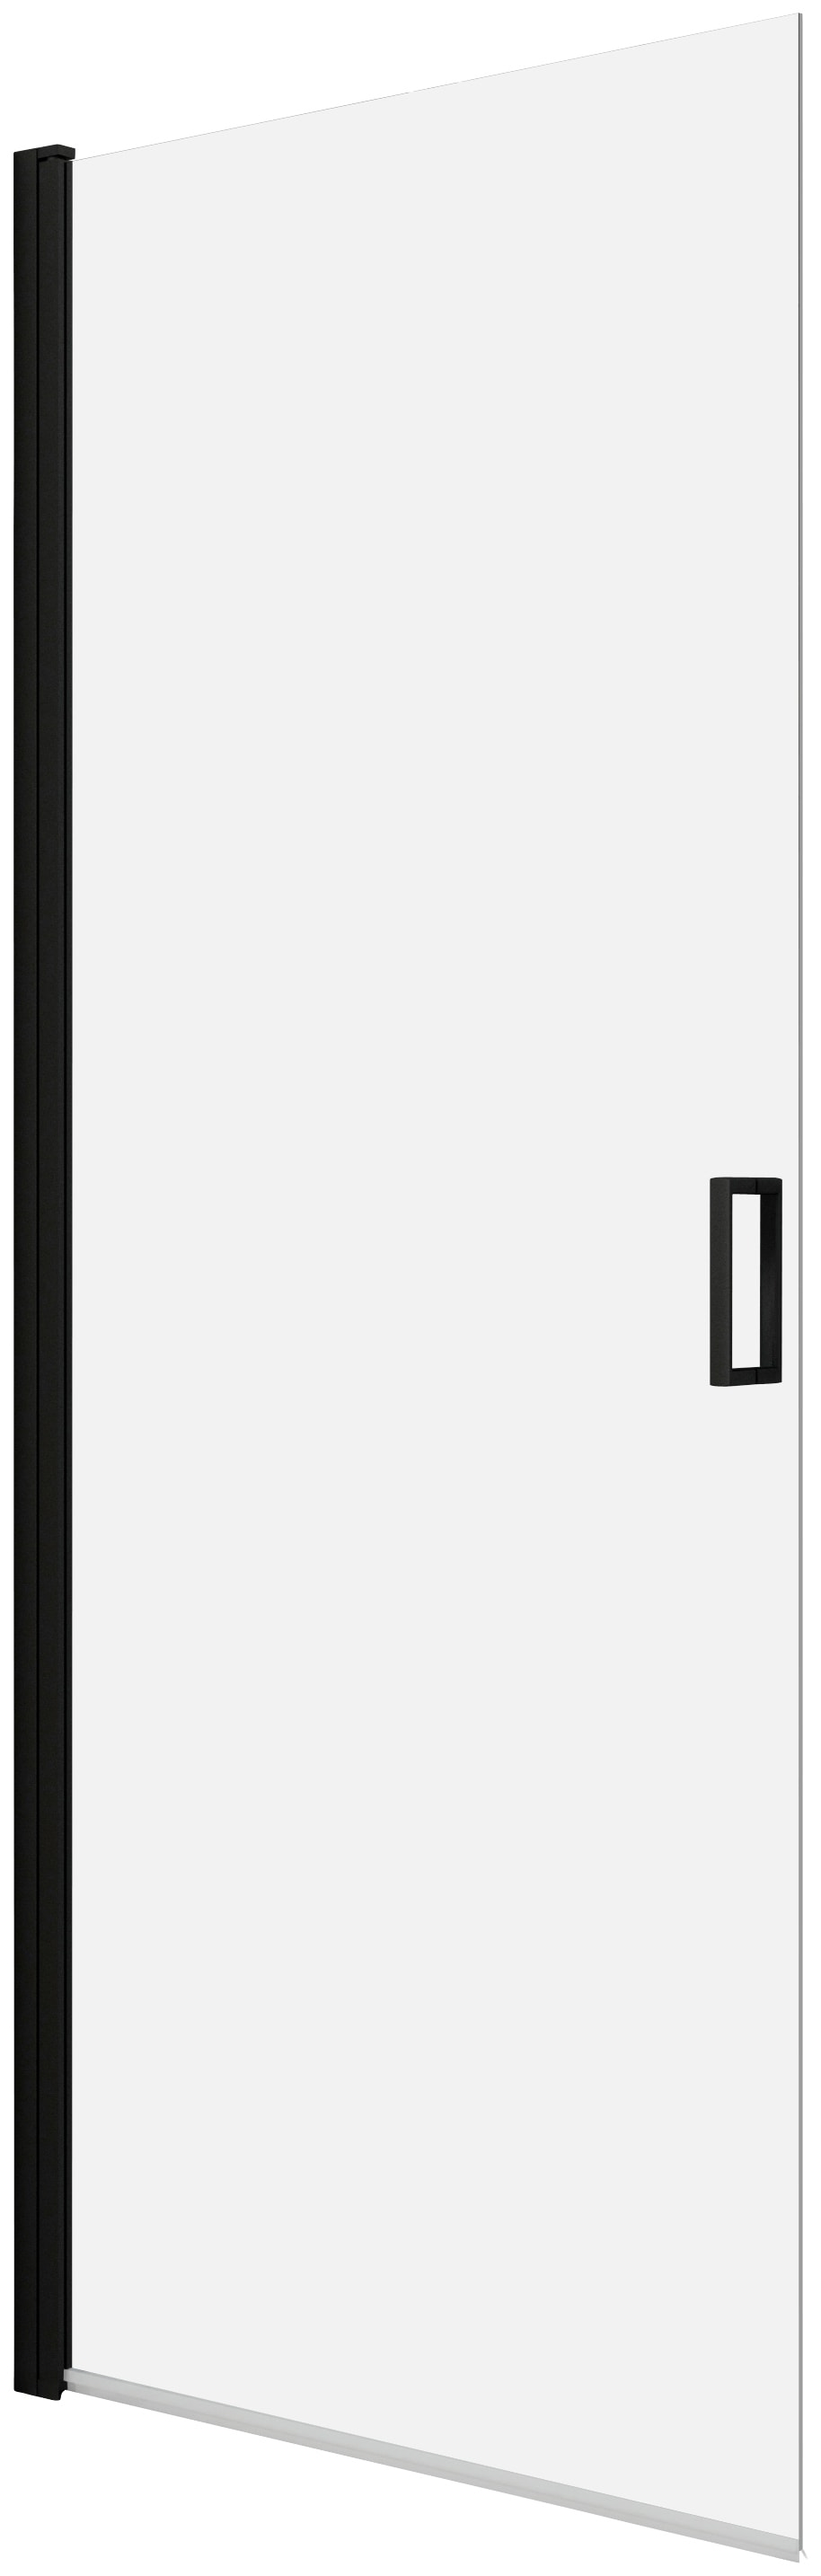 Dusch-Schwingtür »ELITE«, Schwenkttür für Duschen mit Alu-Profilen in schwarz matt